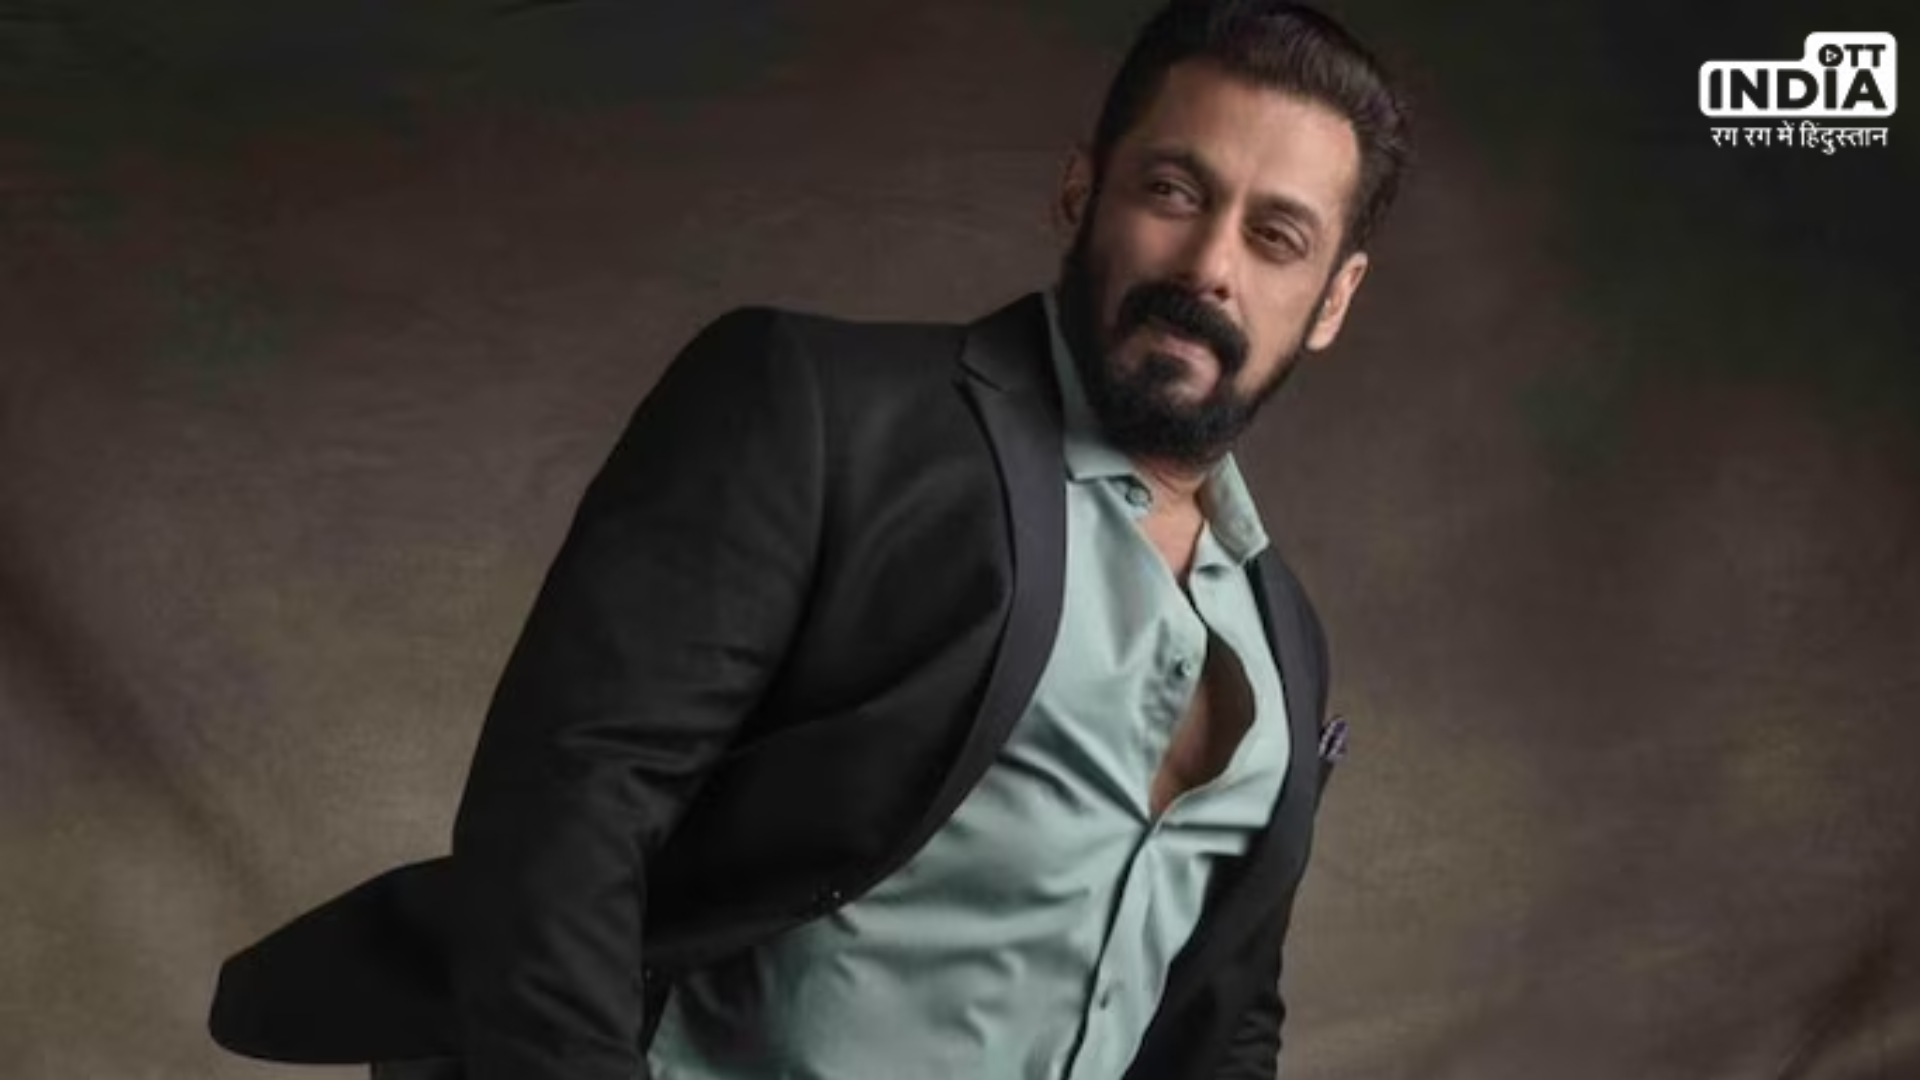 Salman Khan casting fraud SKF: सलमान खान के नाम पर कास्टिंग का फर्जी खेल, प्रोडक्शन हाउस ने जारी किया बयान